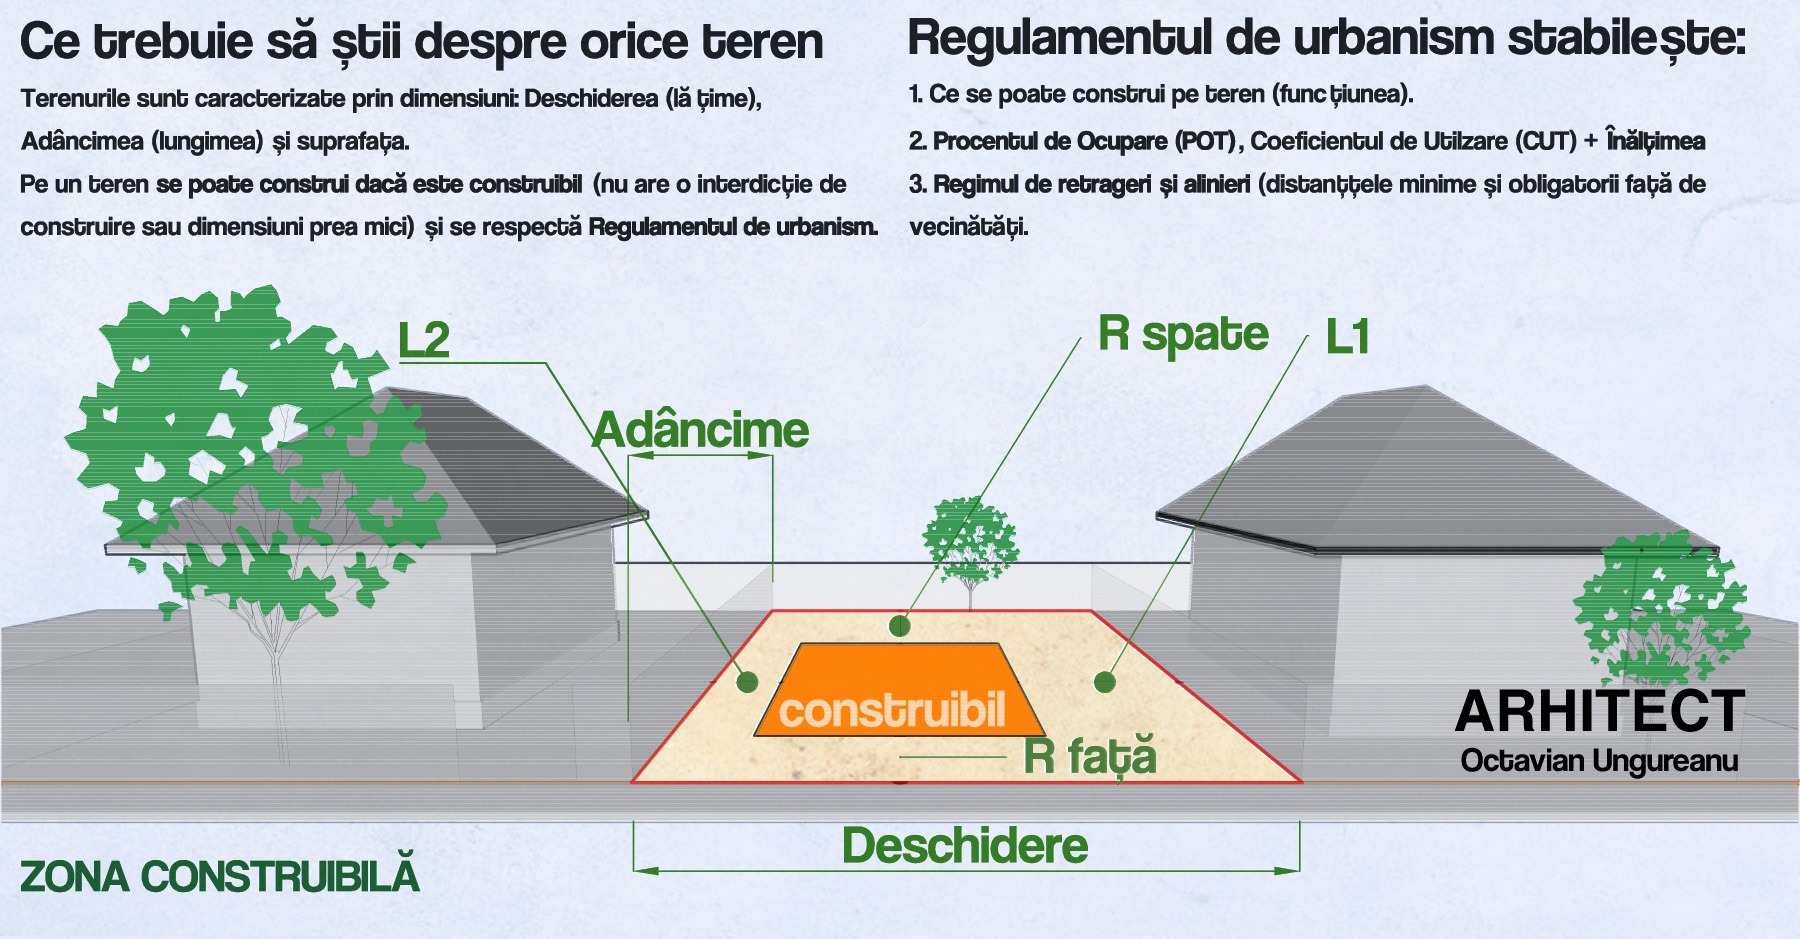 Cum se definește construibilul unei parcele de teren. Prin aplicarea retragerilor minime obligatorii, se constituie terenul pe care viitorul proiect de casă trebuie să-l respecte